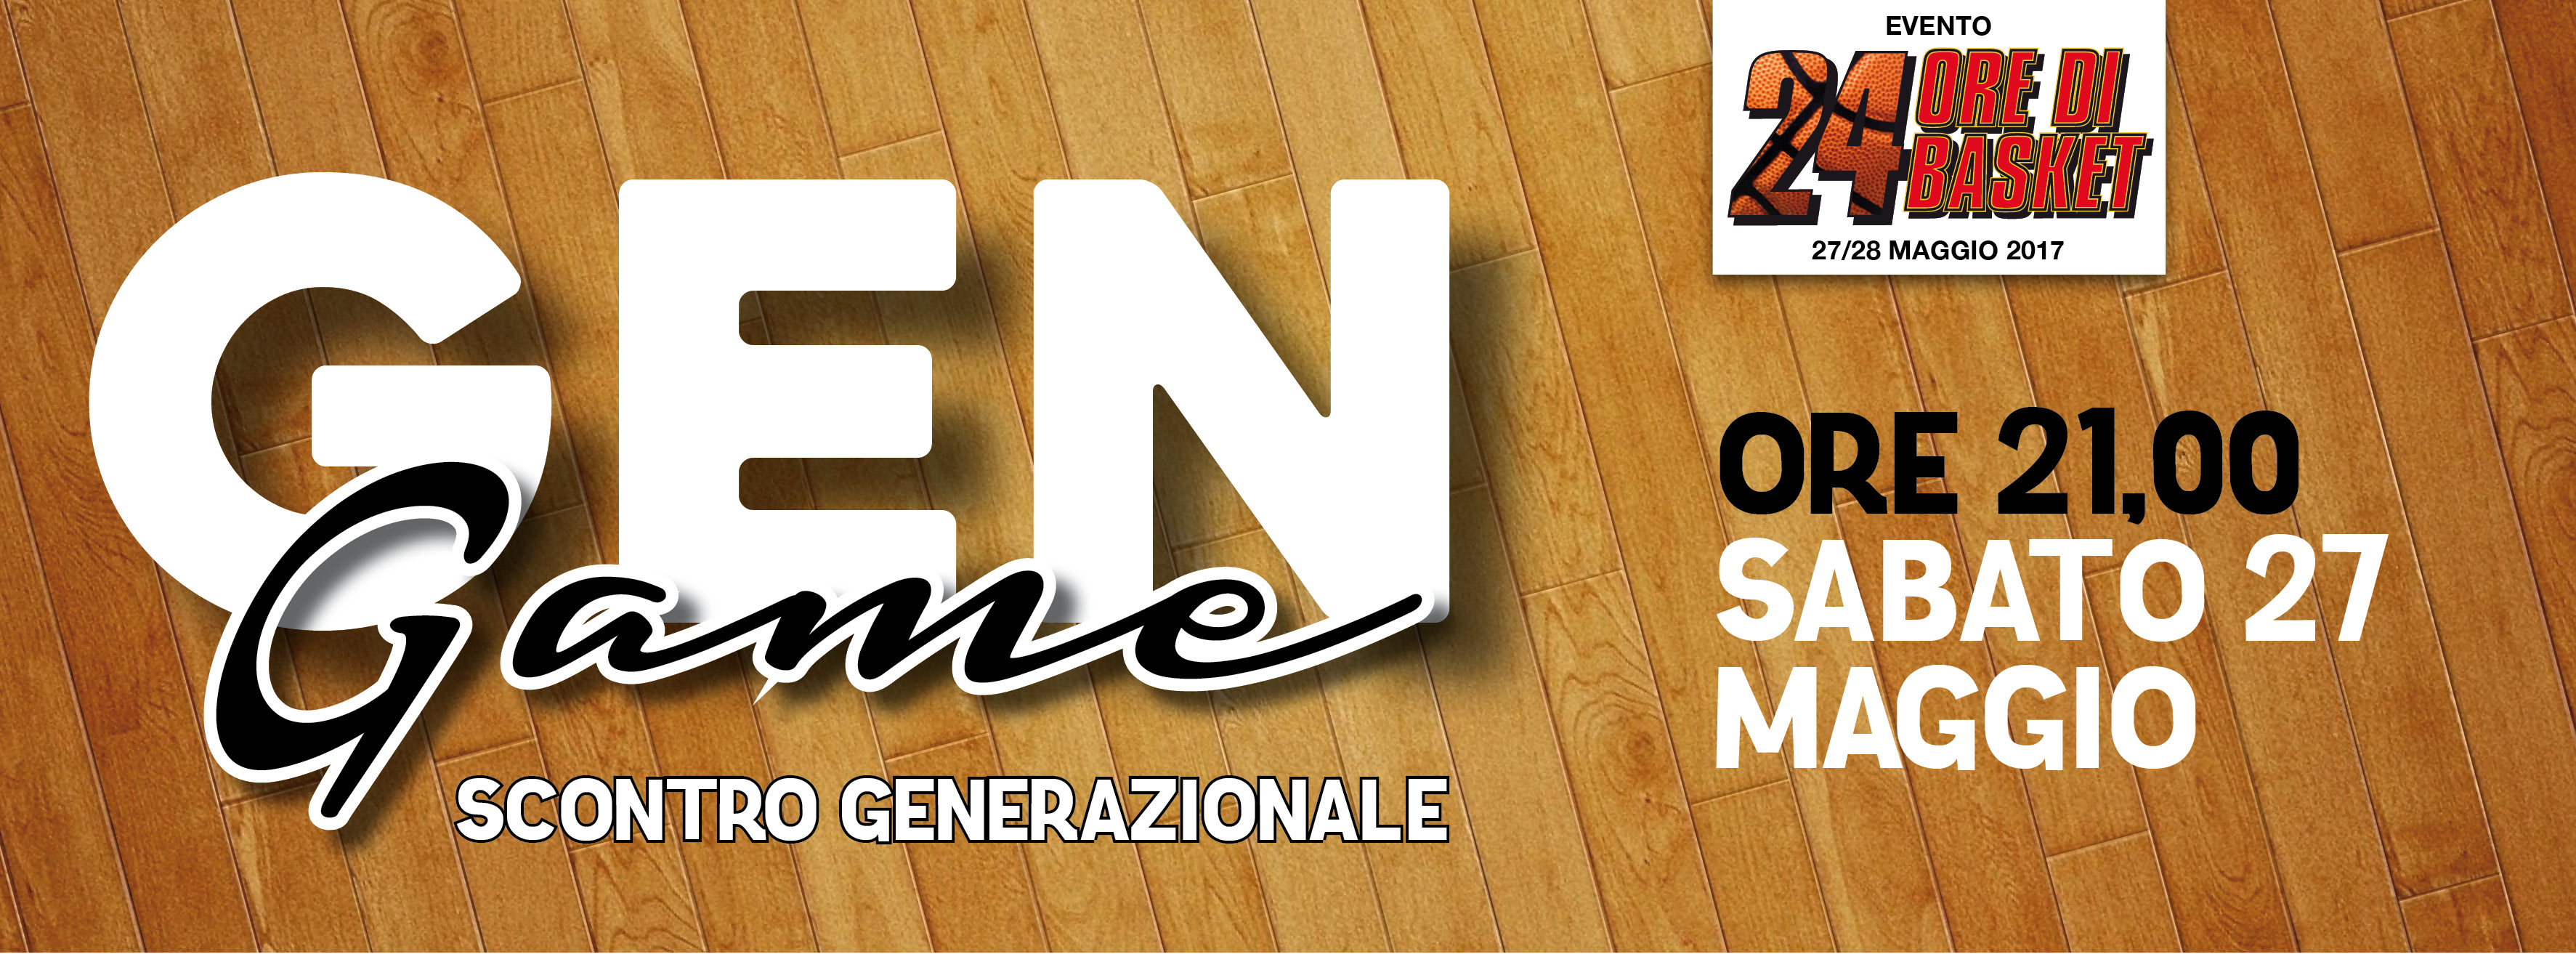 Generation Game sarà il Main Event della 24 Ore di Basket